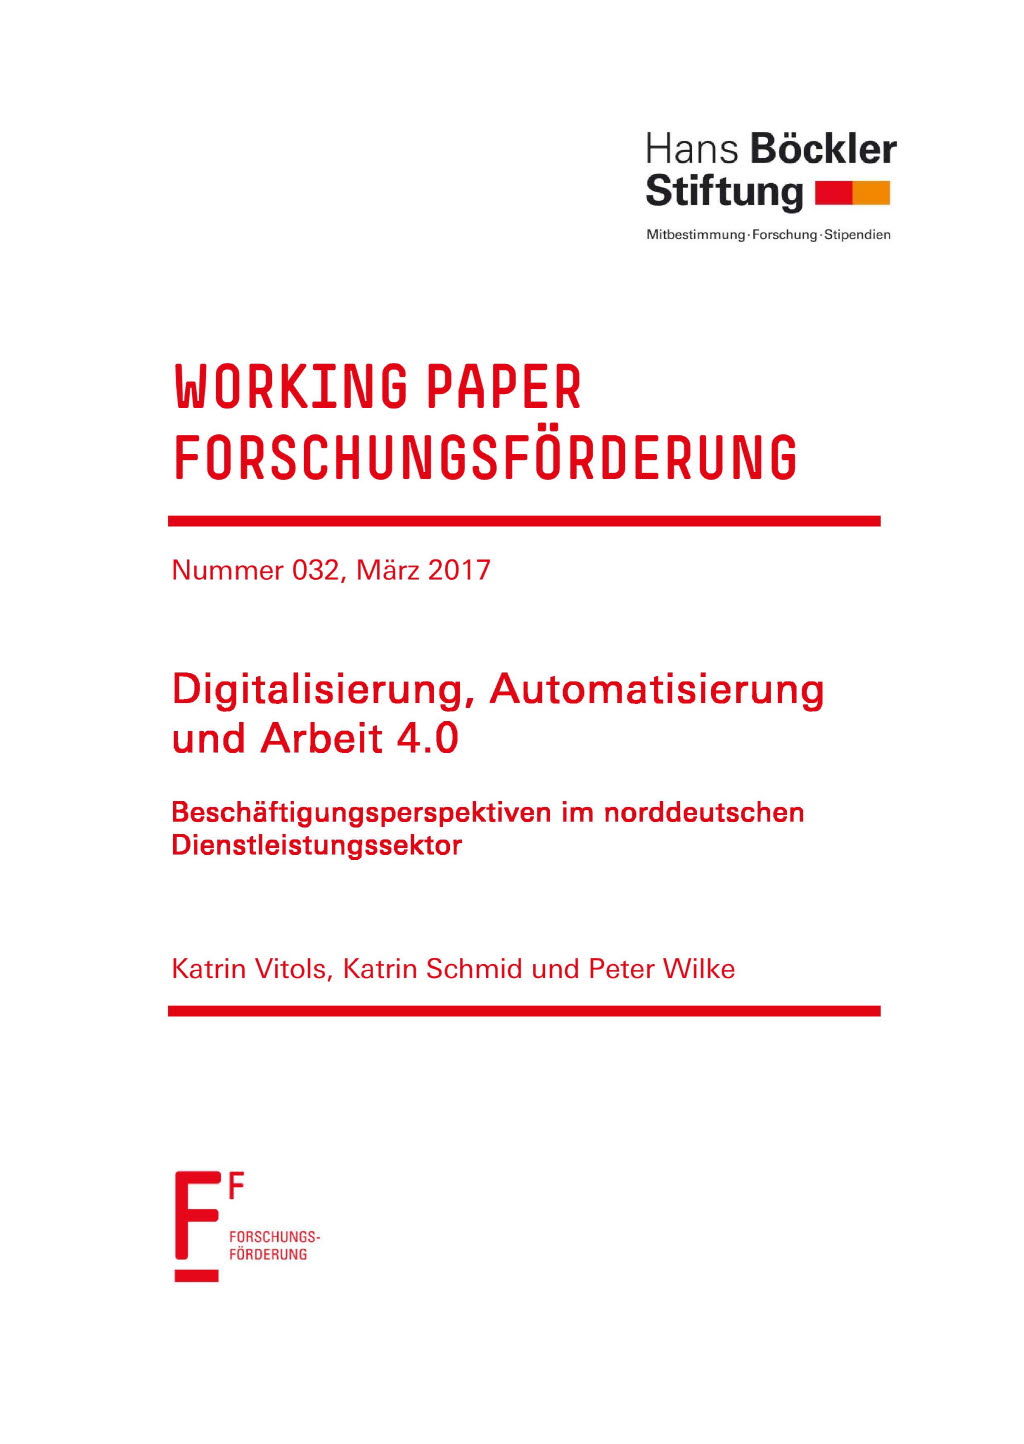 Digitalisierung, Automatisierung und Arbeit 4.0